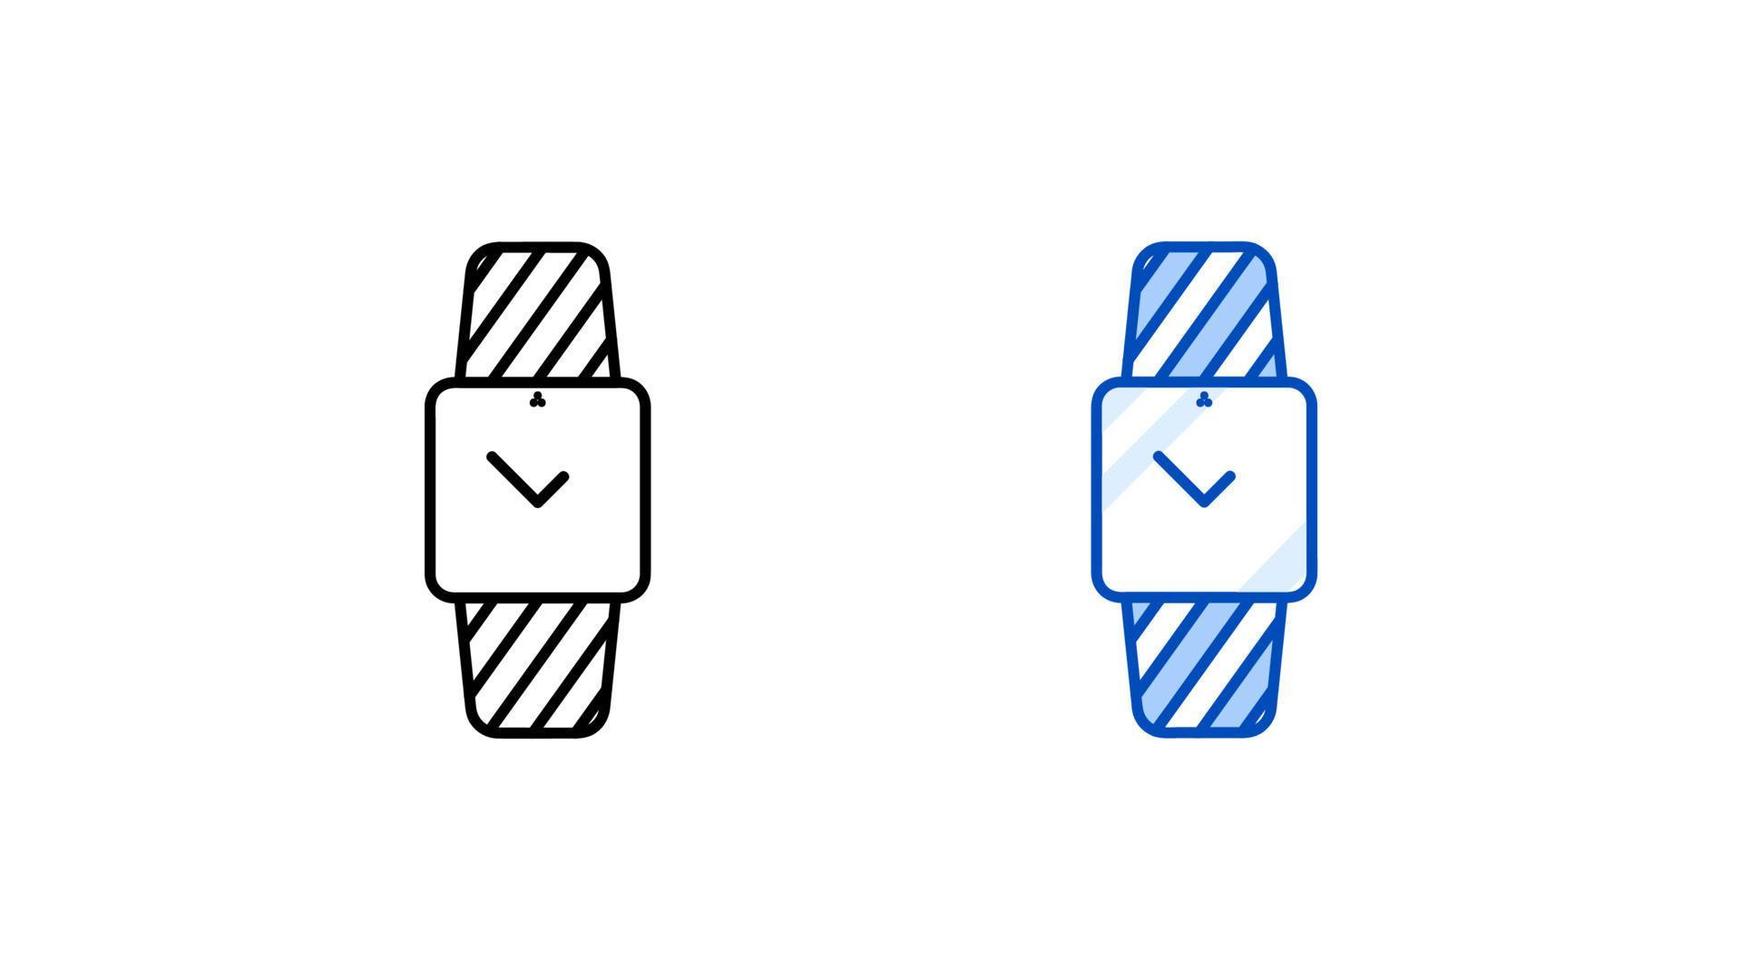 conjunto de iconos de reloj inteligente moderno. reloj de pantalla cuadrado simple moderno. plantilla lista para iconos lineales y de colores. descargue el vector de pantalla táctil de dispositivo inteligente lineal simple. Fondo blanco.